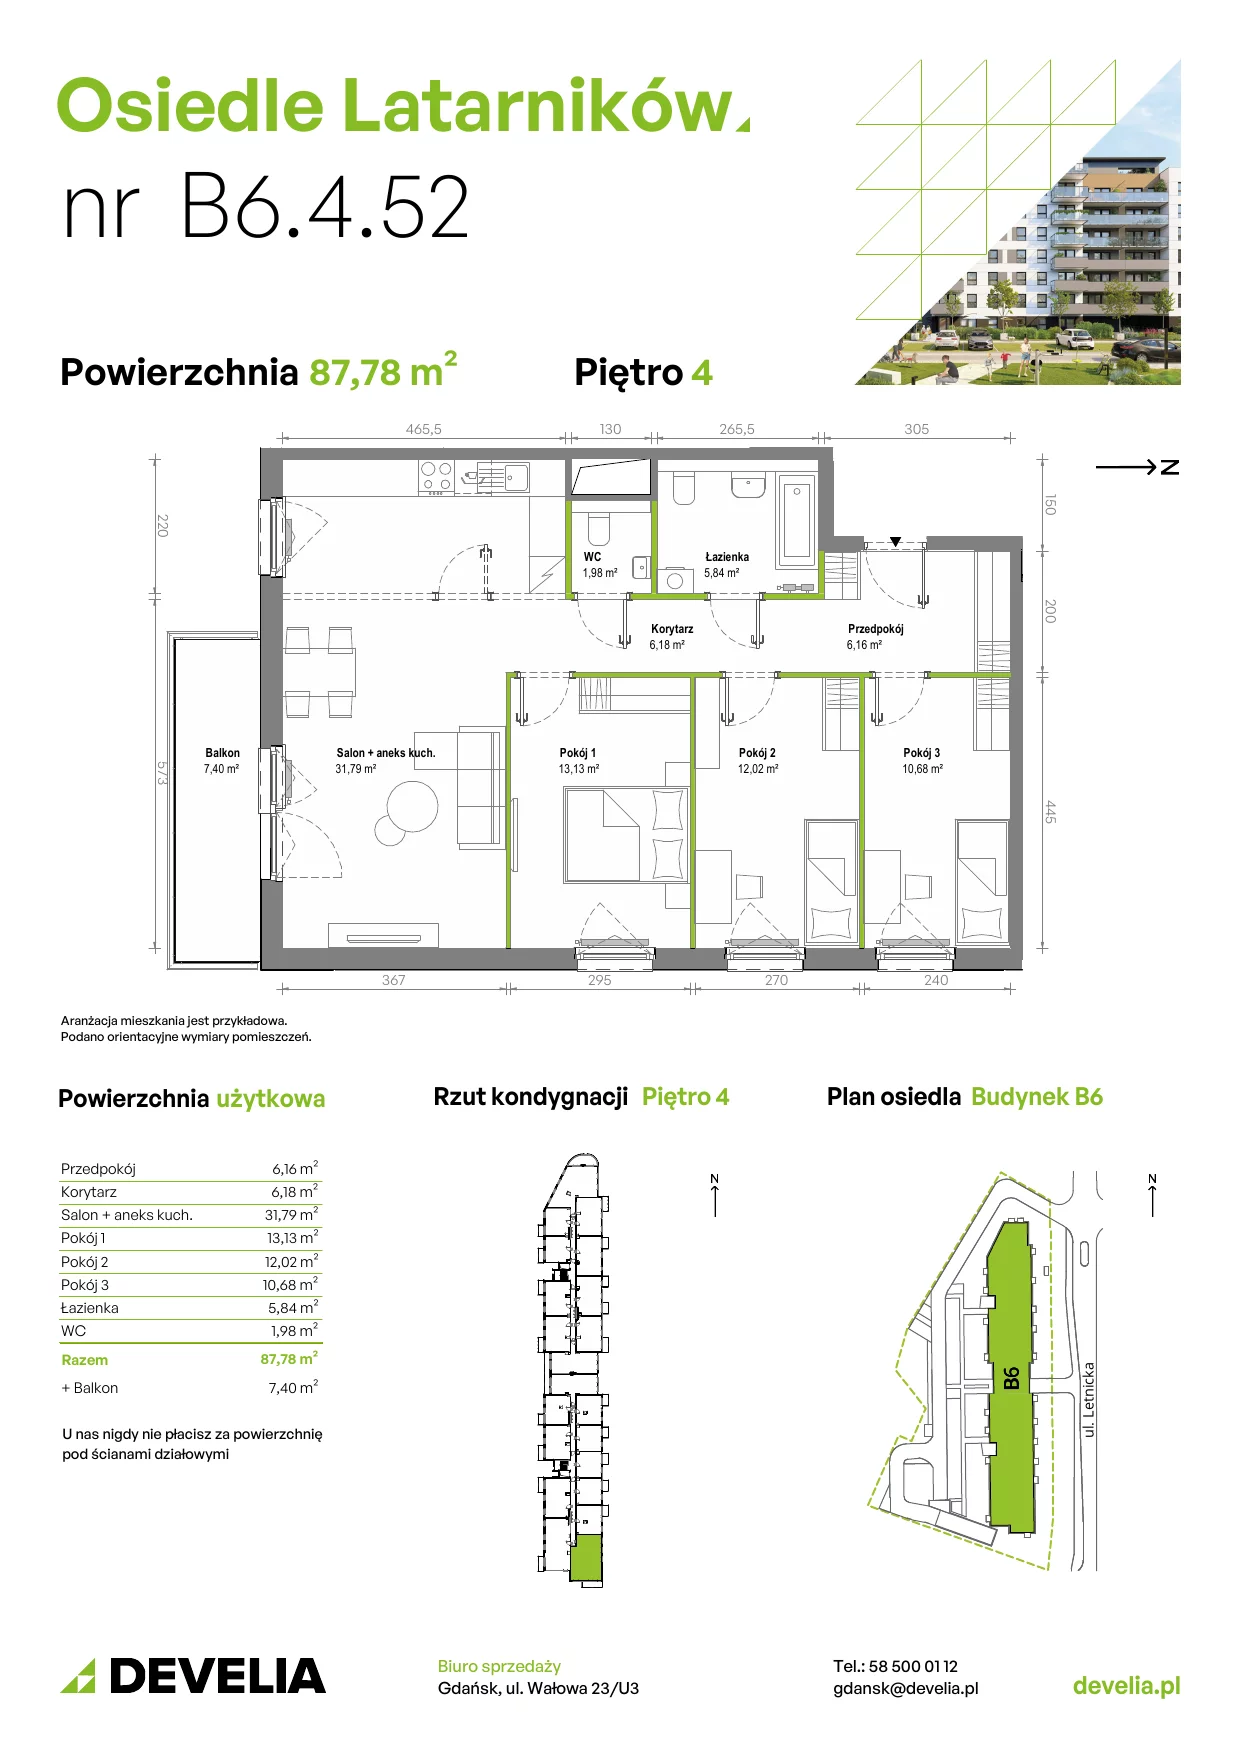 Mieszkanie 87,66 m², piętro 4, oferta nr B6.4.052, Osiedle Latarników, Gdańsk, Letnica, ul. Letnicka 1